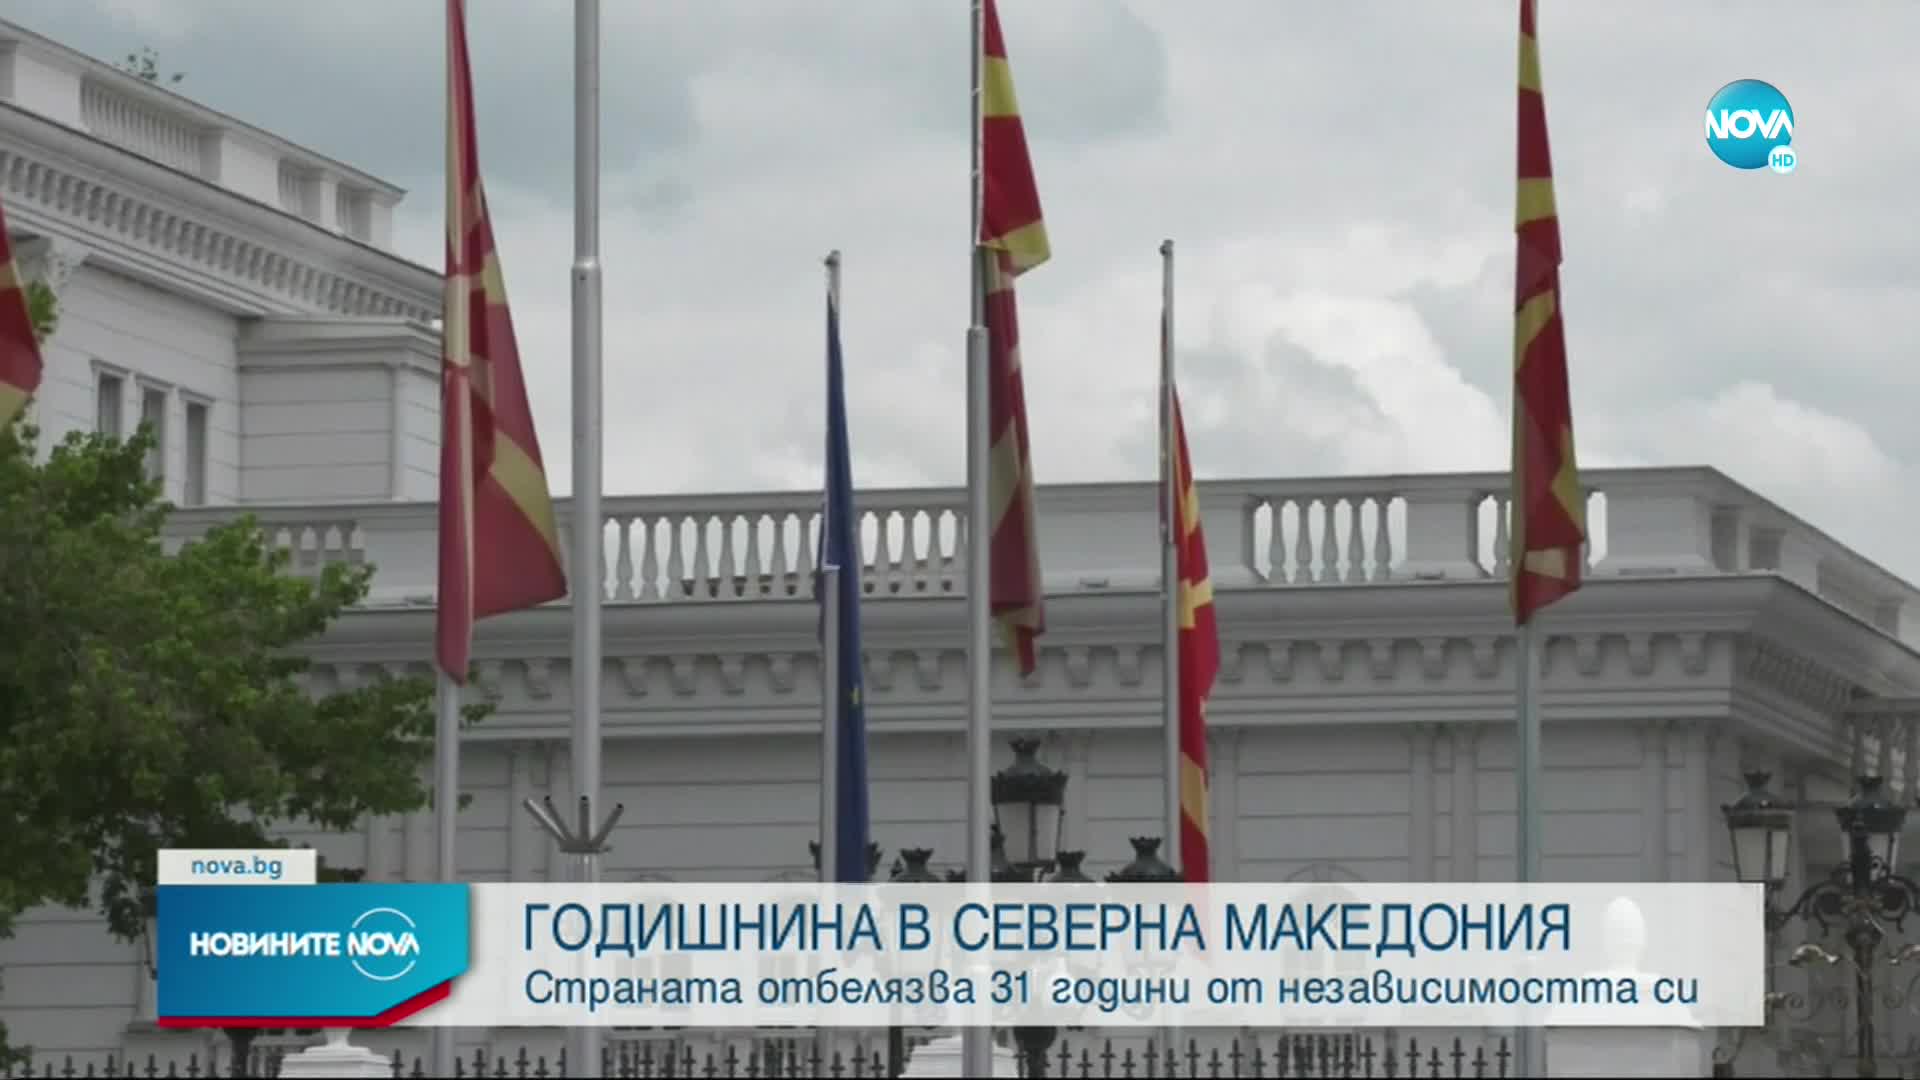 Северна Македония празнува 31 години независимост